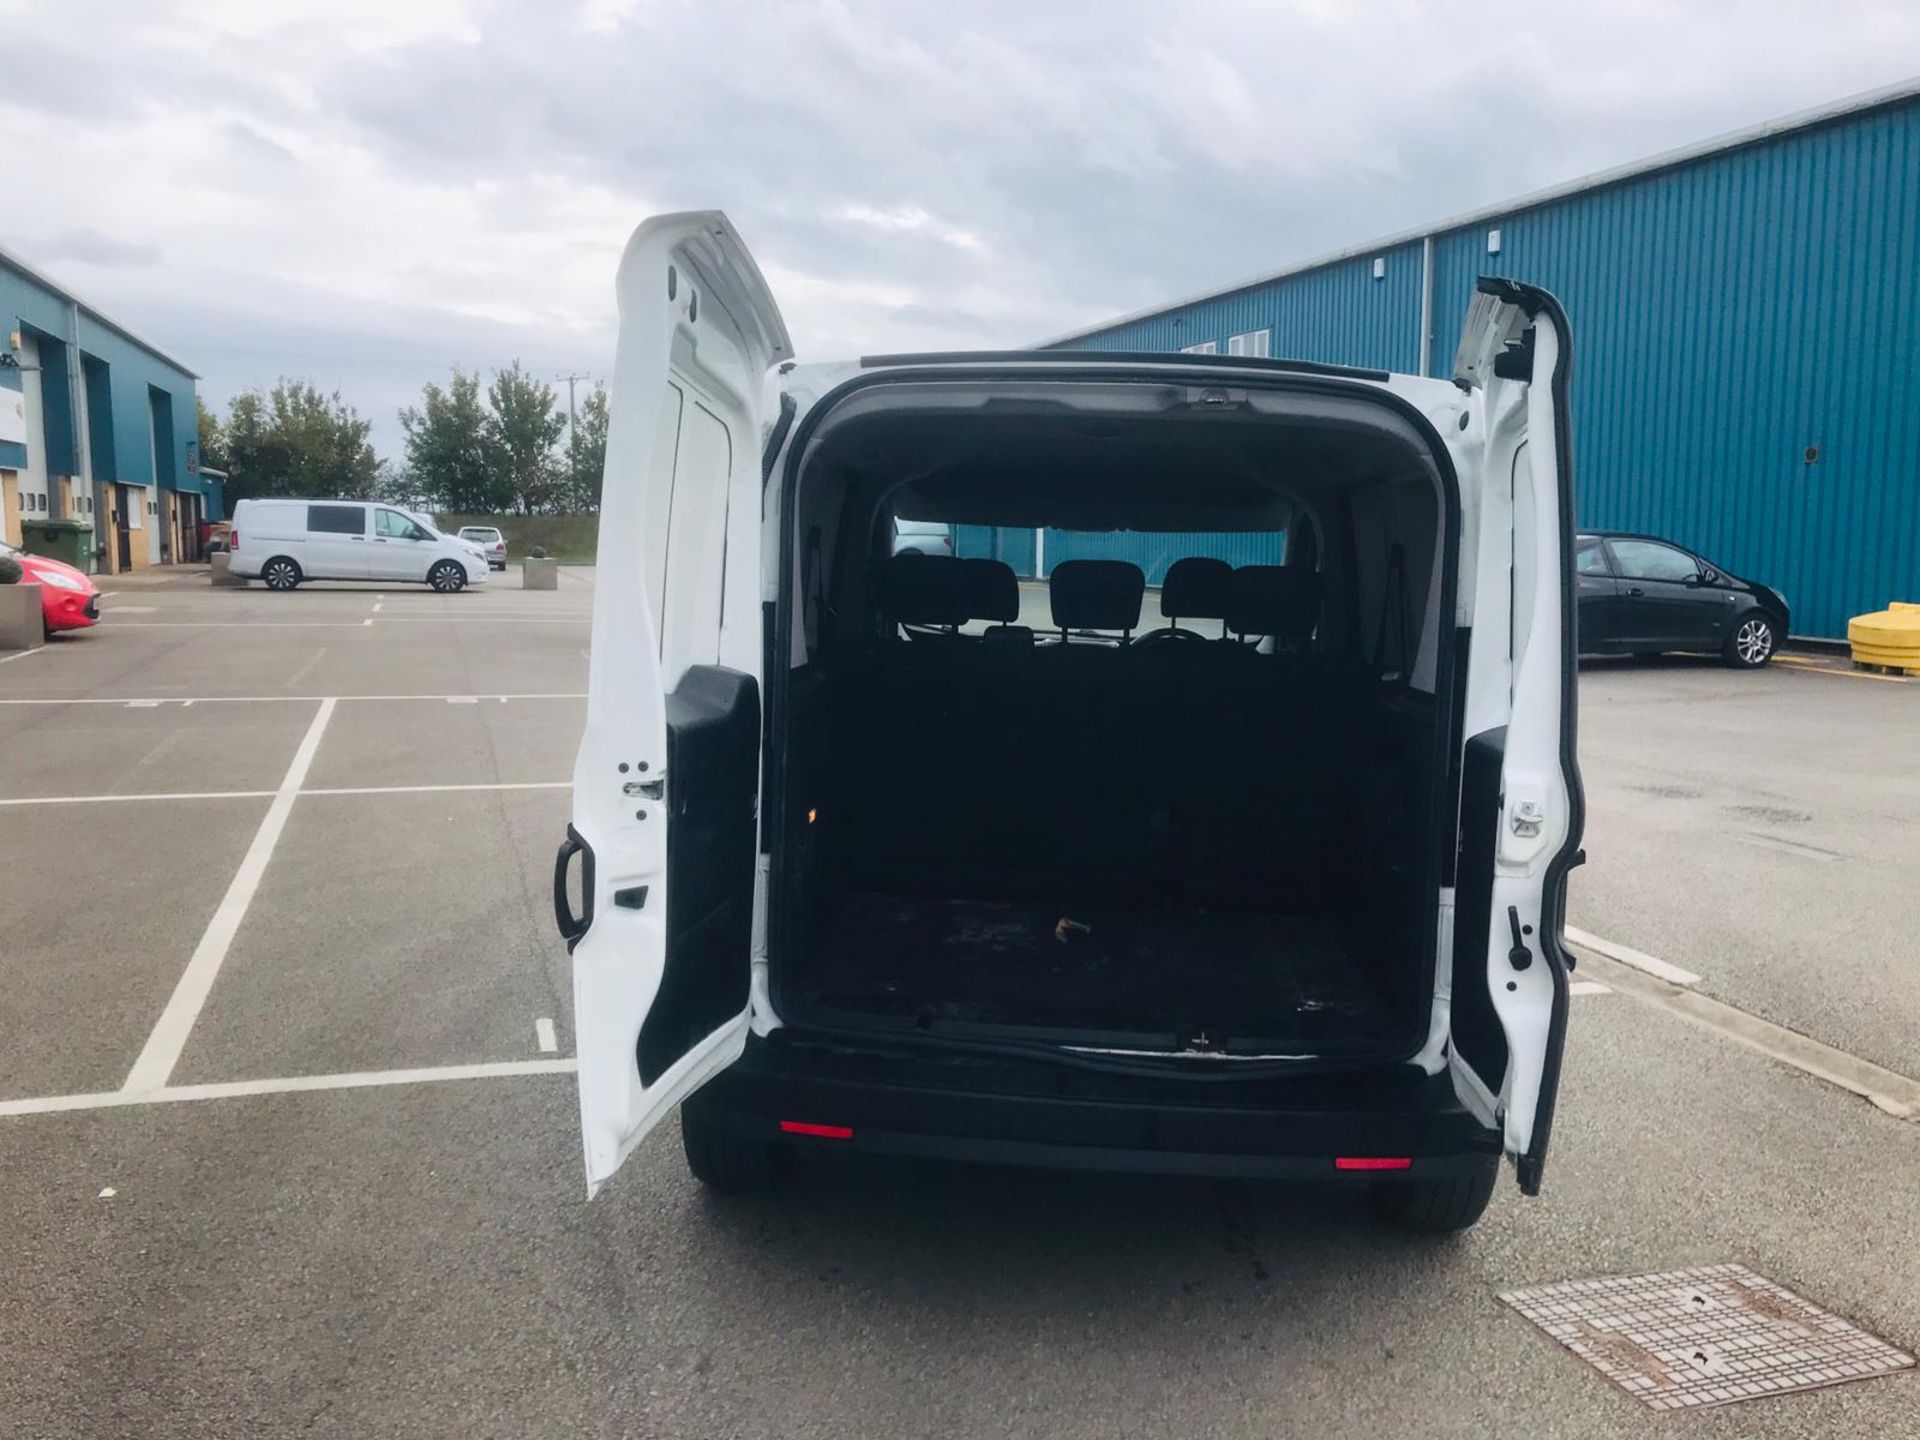 (RESERVE MET) Vauxhall Combo 2300 1.2 CDTI Crew Van (5 Seats) 2018 Model - Euro 6b - Image 7 of 23